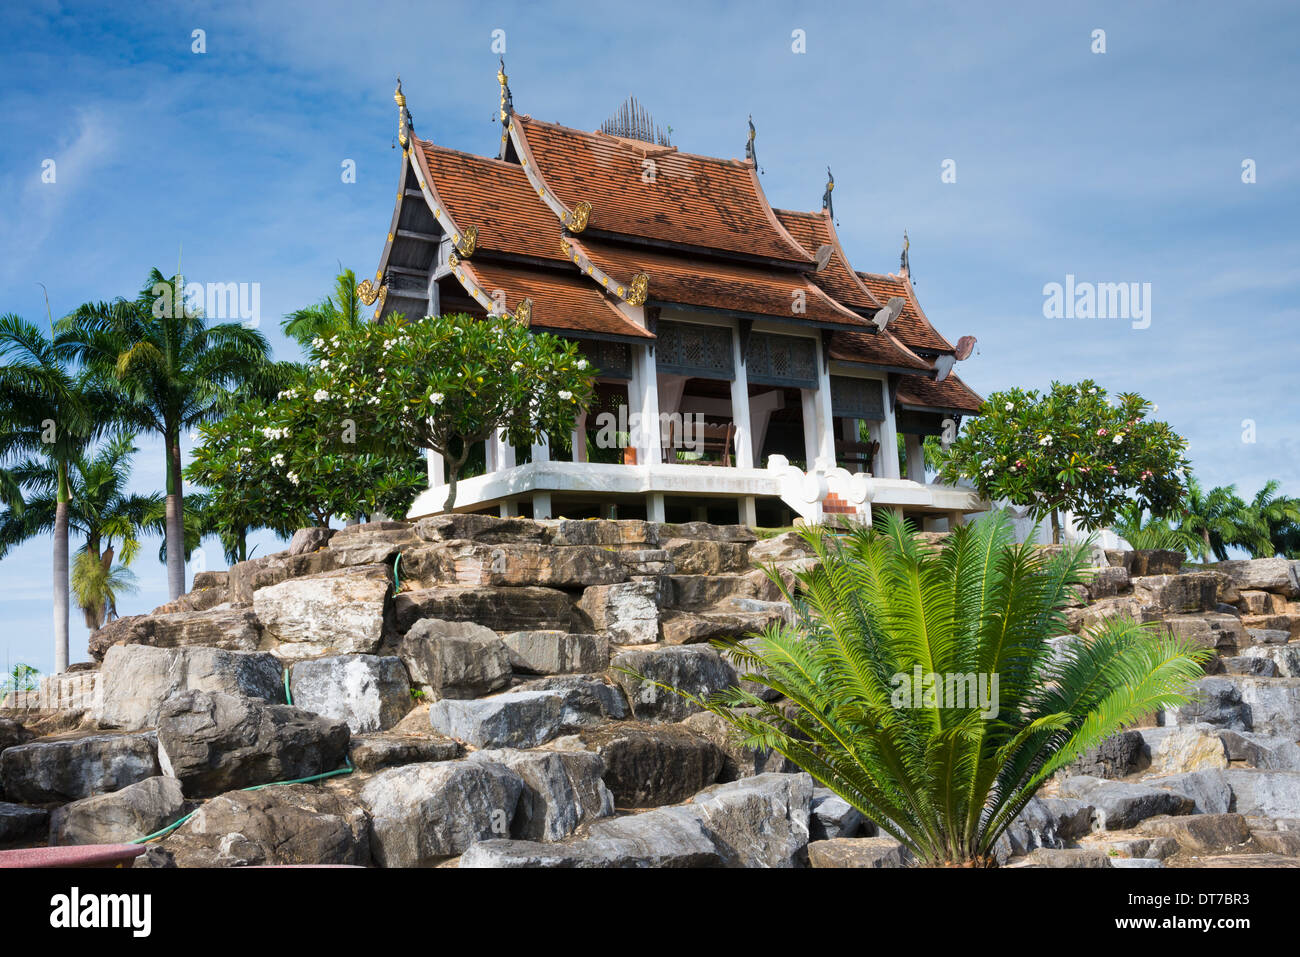 Thai Gazebo, Asian architecture, Nong Nooch Tropical Garden, Thailand Stock Photo